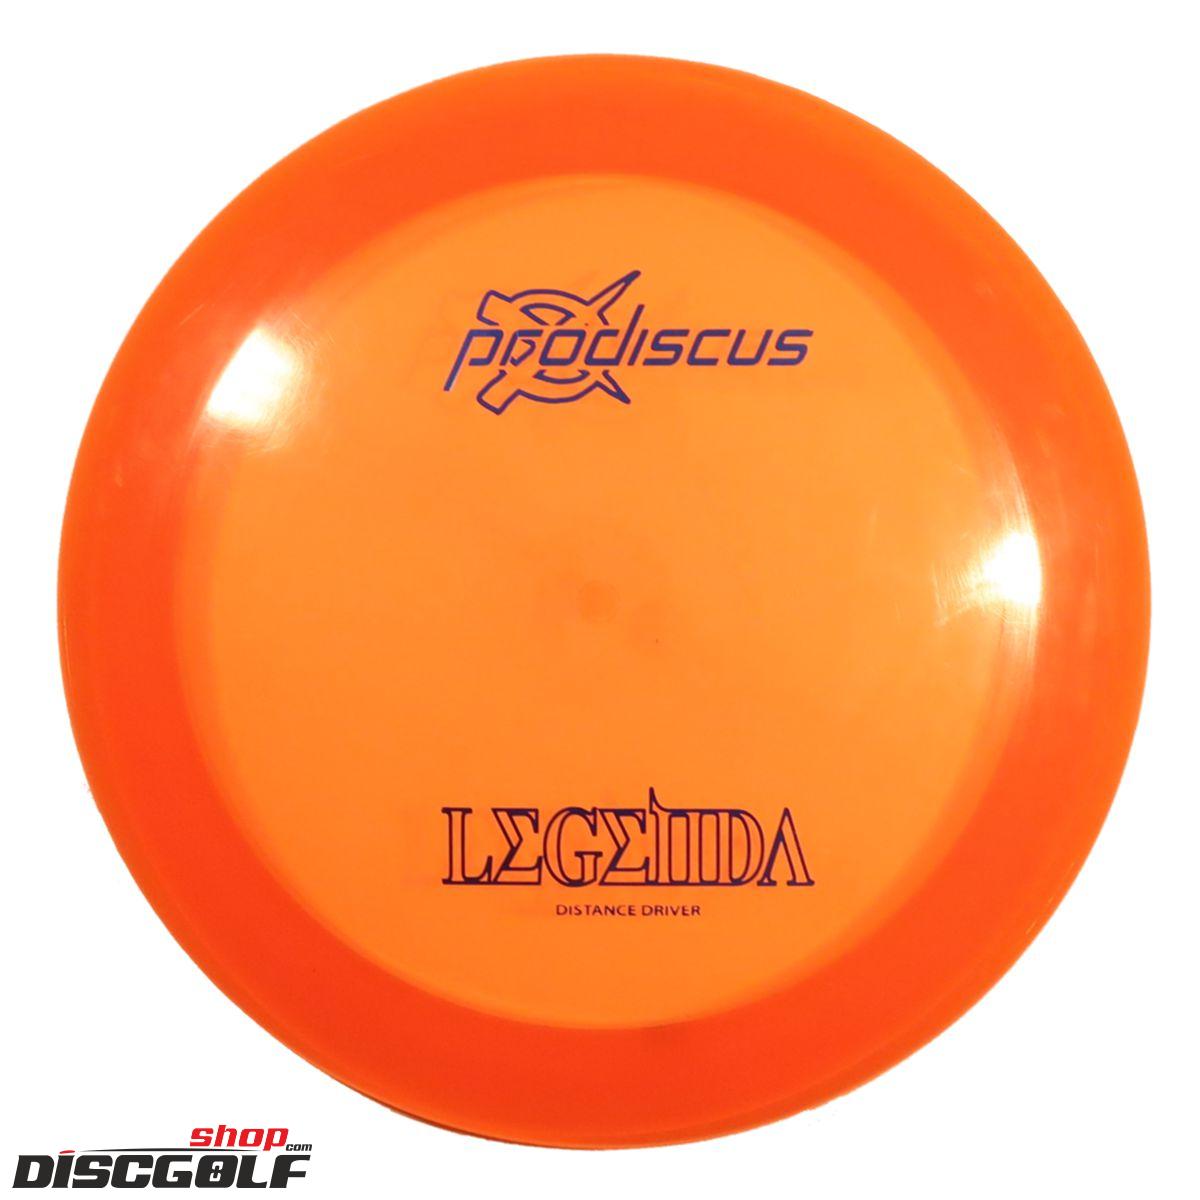 Prodiscus Legenda Premium (discgolf)